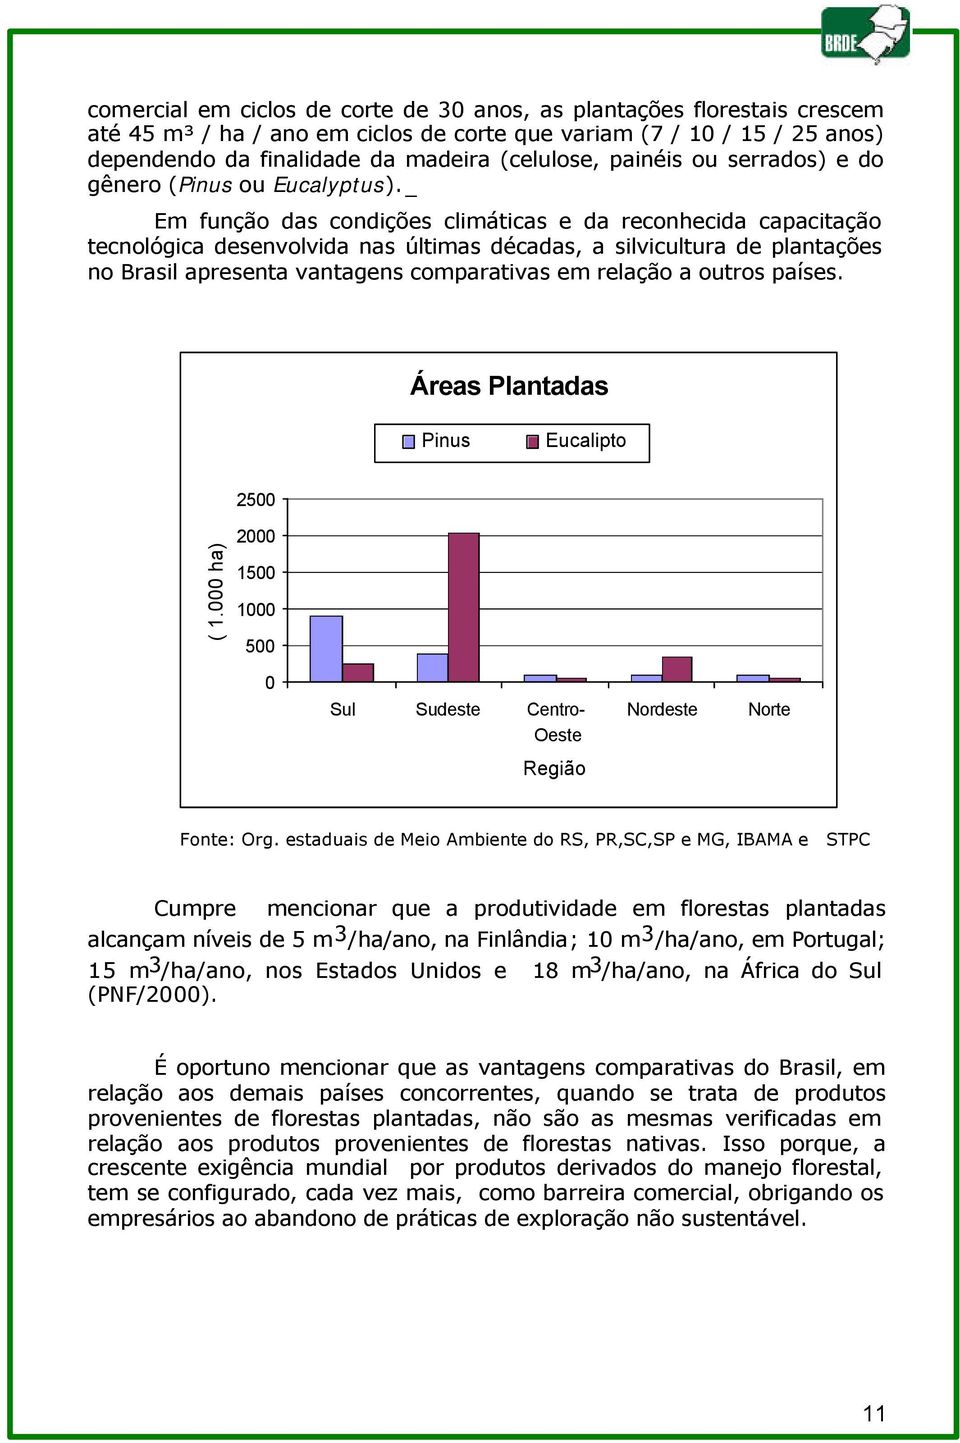 _ Em função das condições climáticas e da reconhecida capacitação tecnológica desenvolvida nas últimas décadas, a silvicultura de plantações no Brasil apresenta vantagens comparativas em relação a